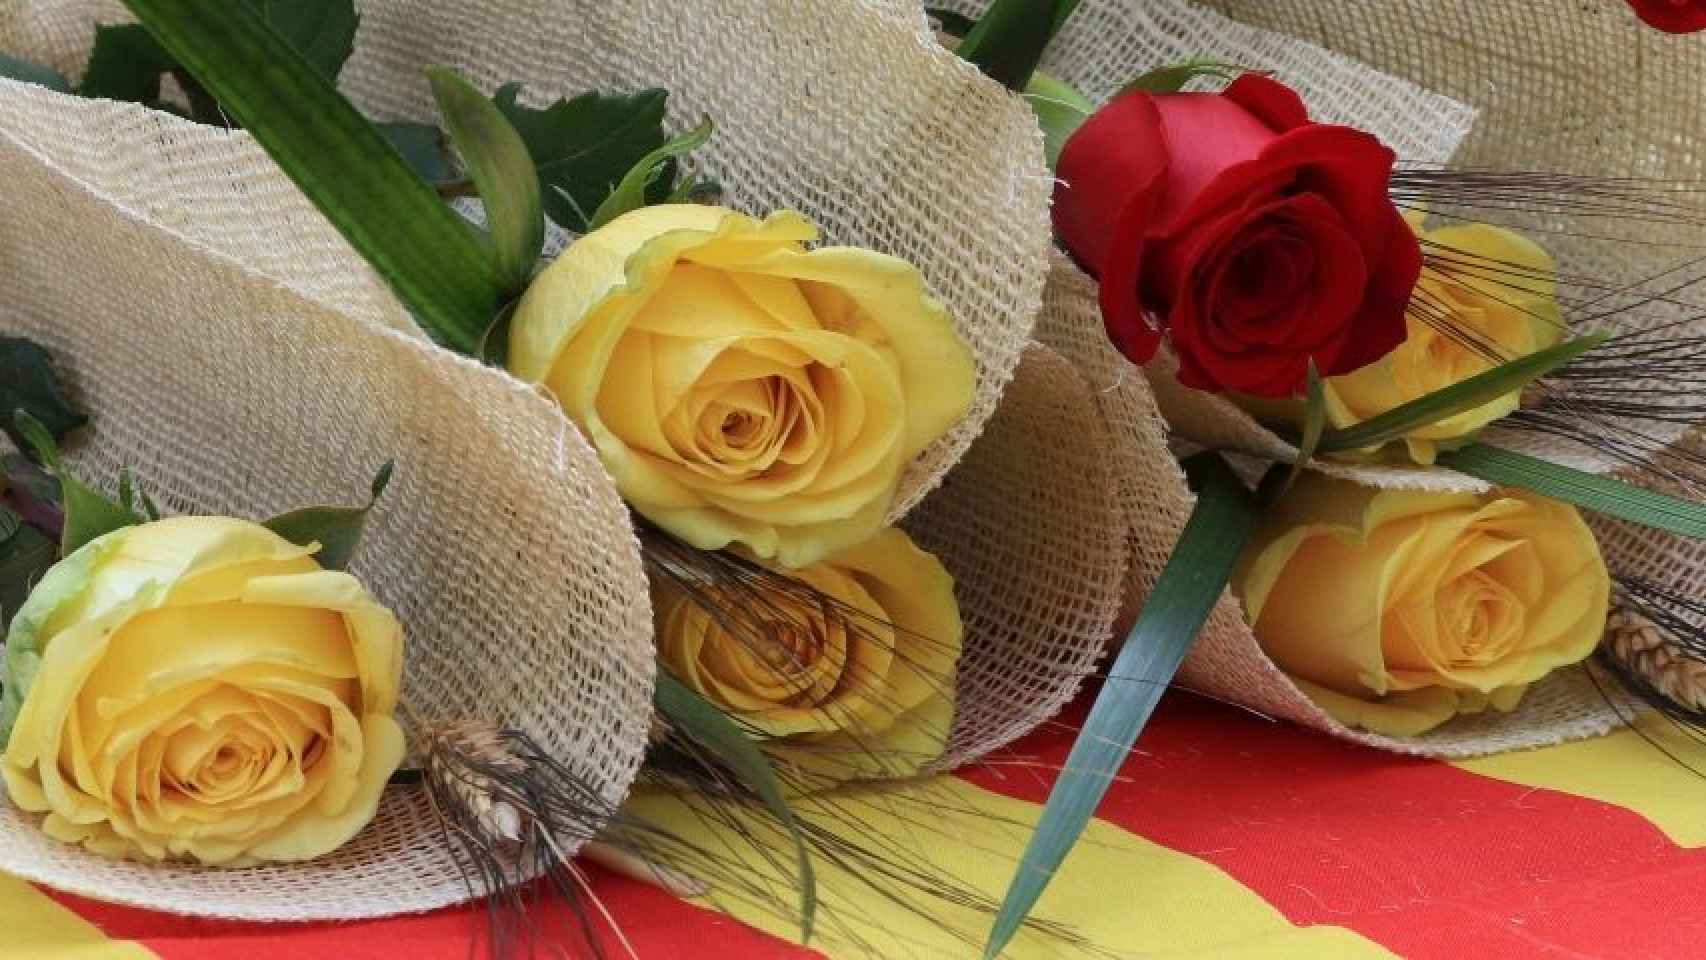 La venta ilegal de rosas inundará el día de Sant Jordi